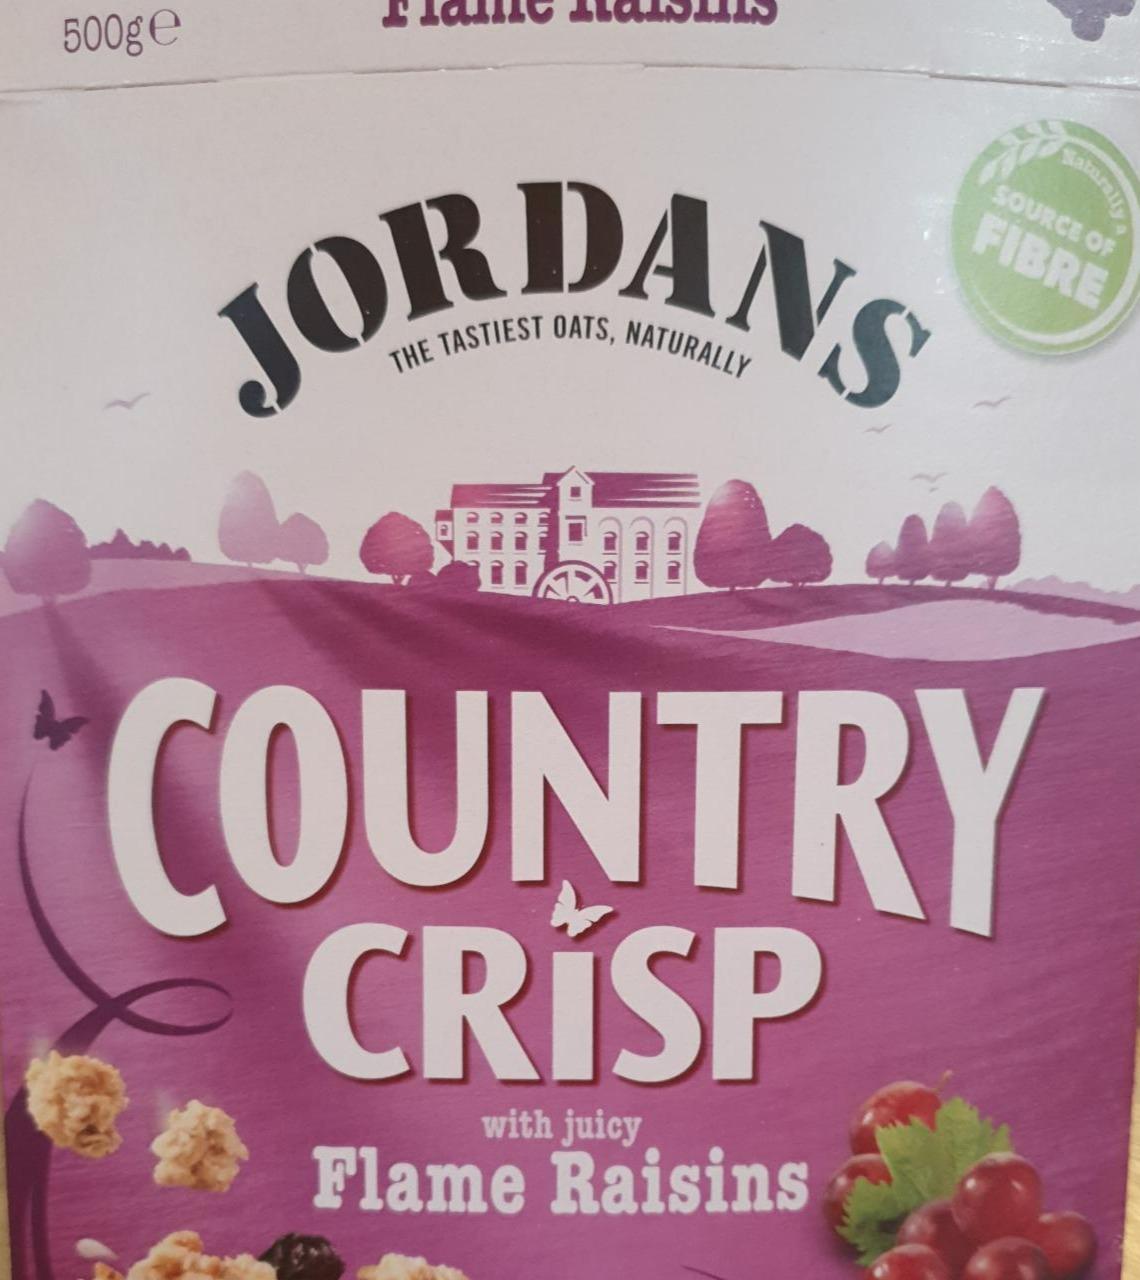 Fotografie - Country Crisp with juicy Flame Raisins Jordans